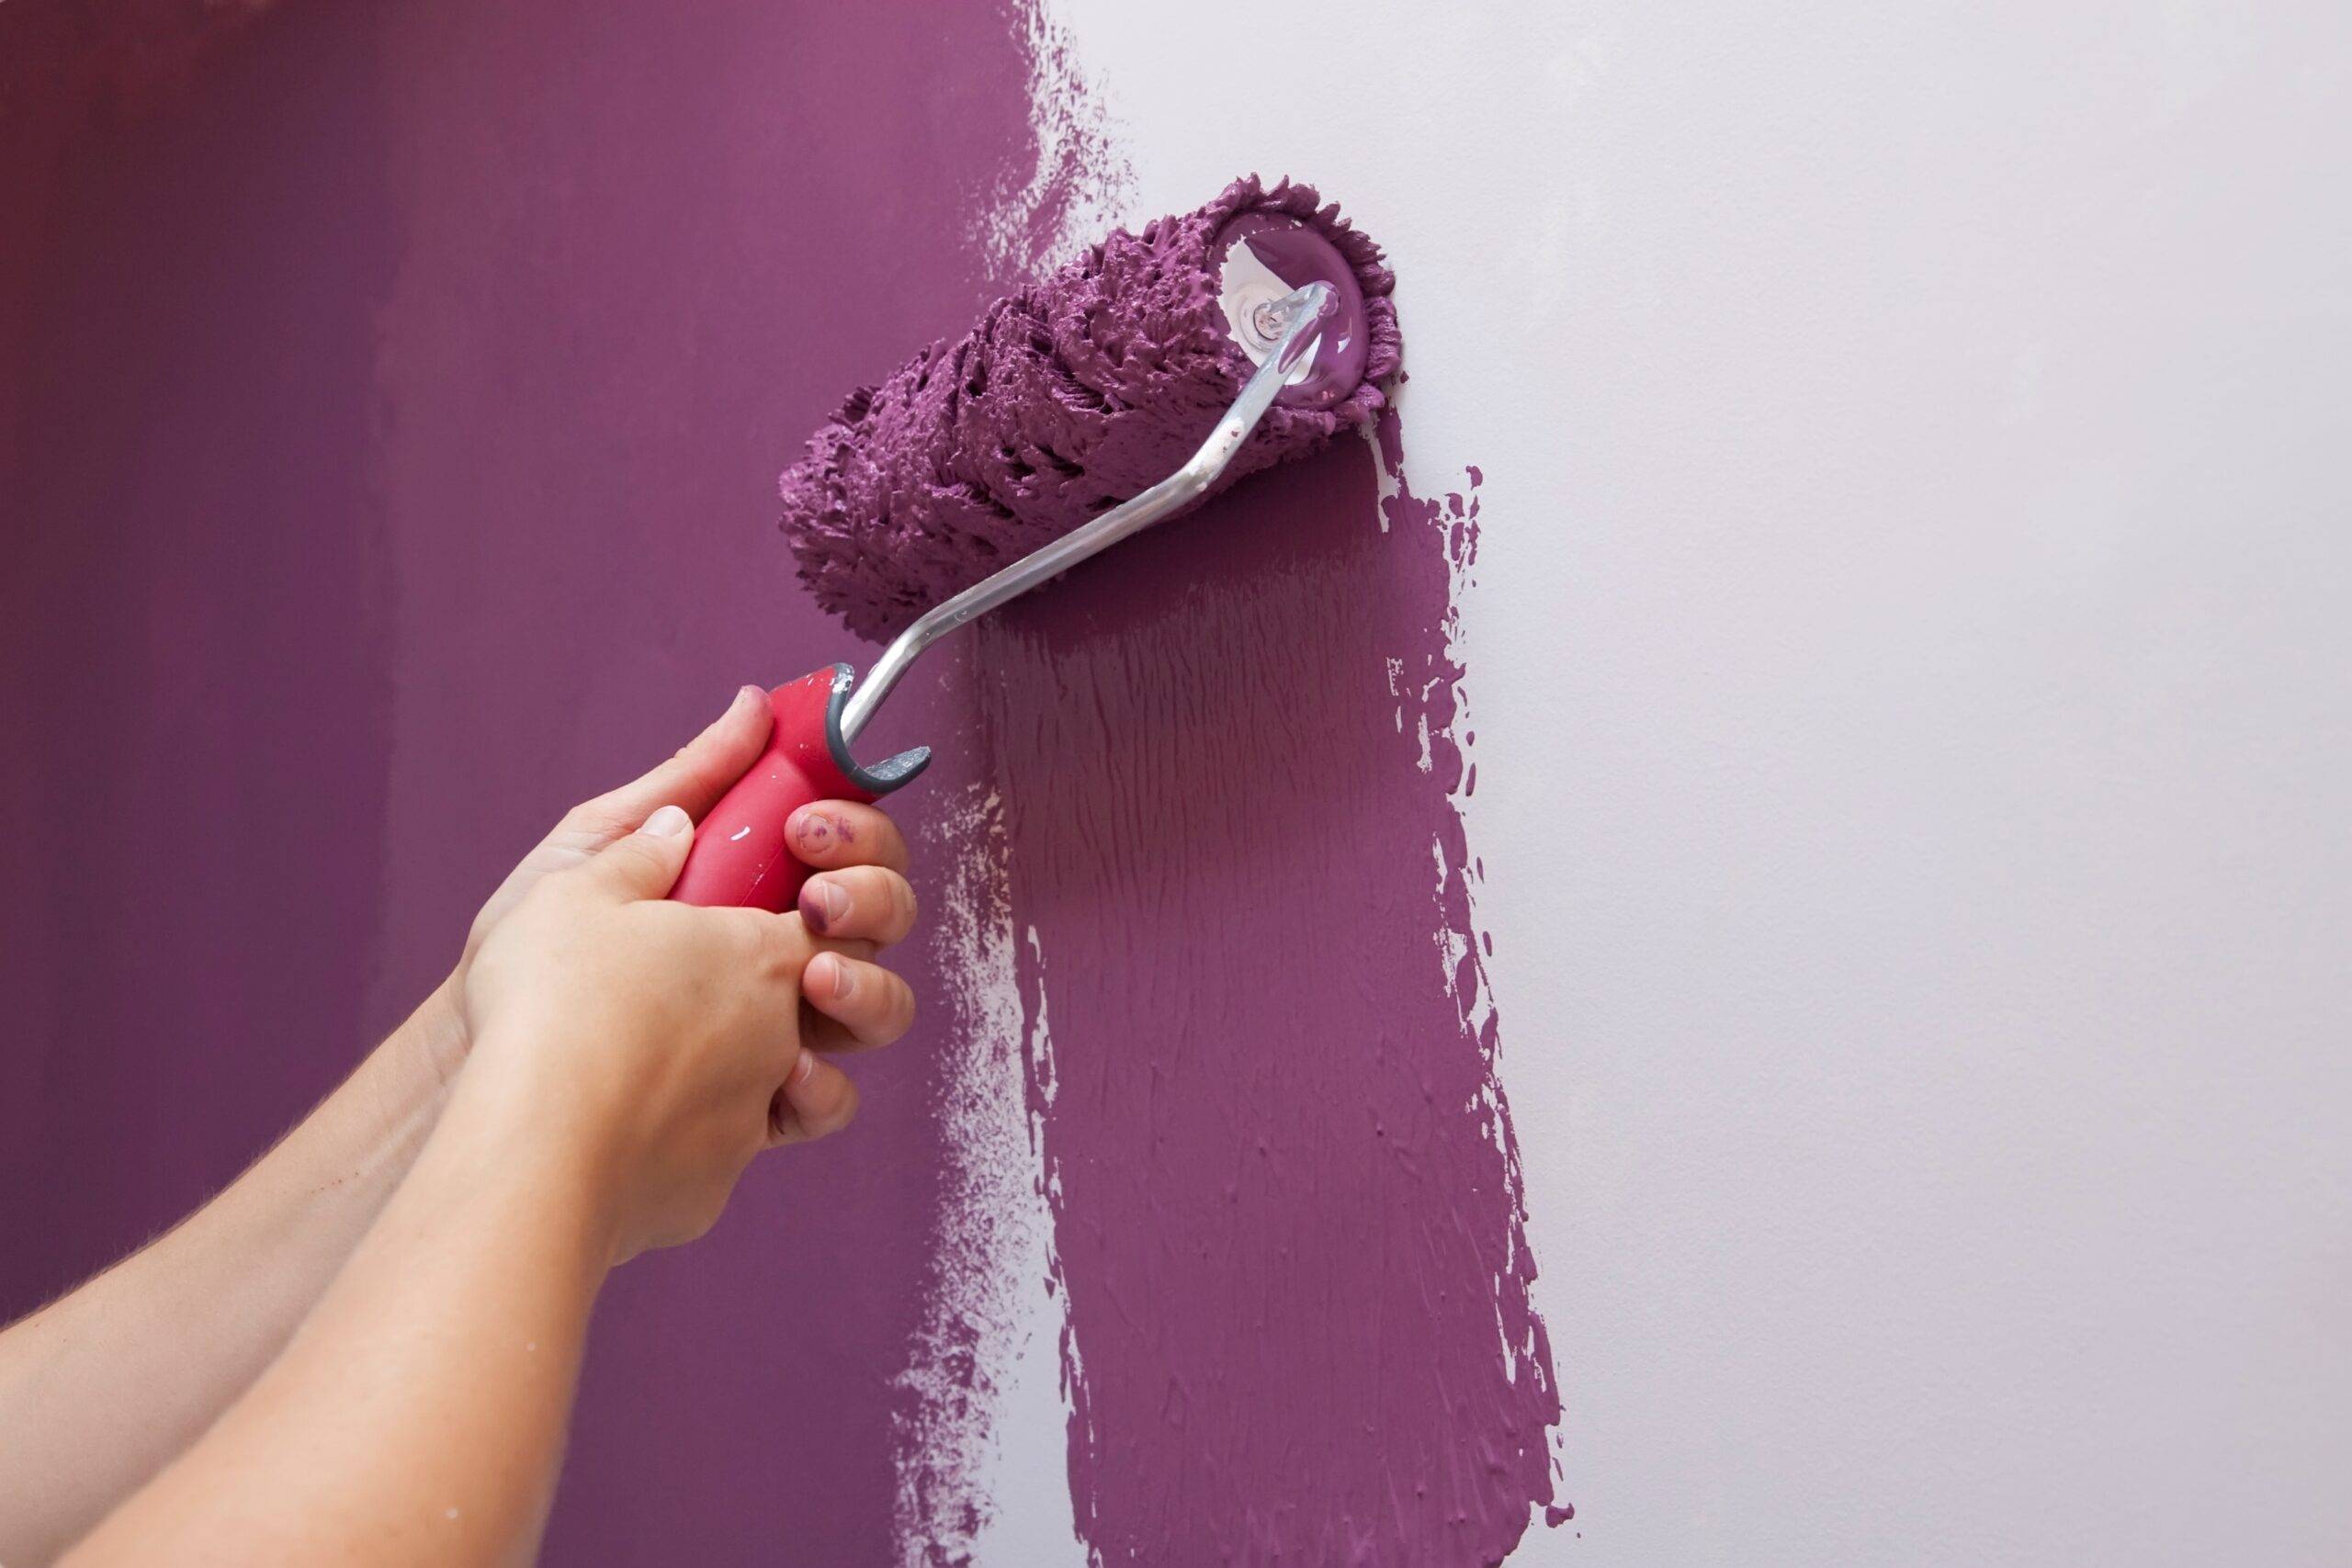 Лучшие краски для покраски обоев. Покрашенные стены. Идеи окрашивания стен. Валик для покраски стен. Обои под покраску идеи покраски.